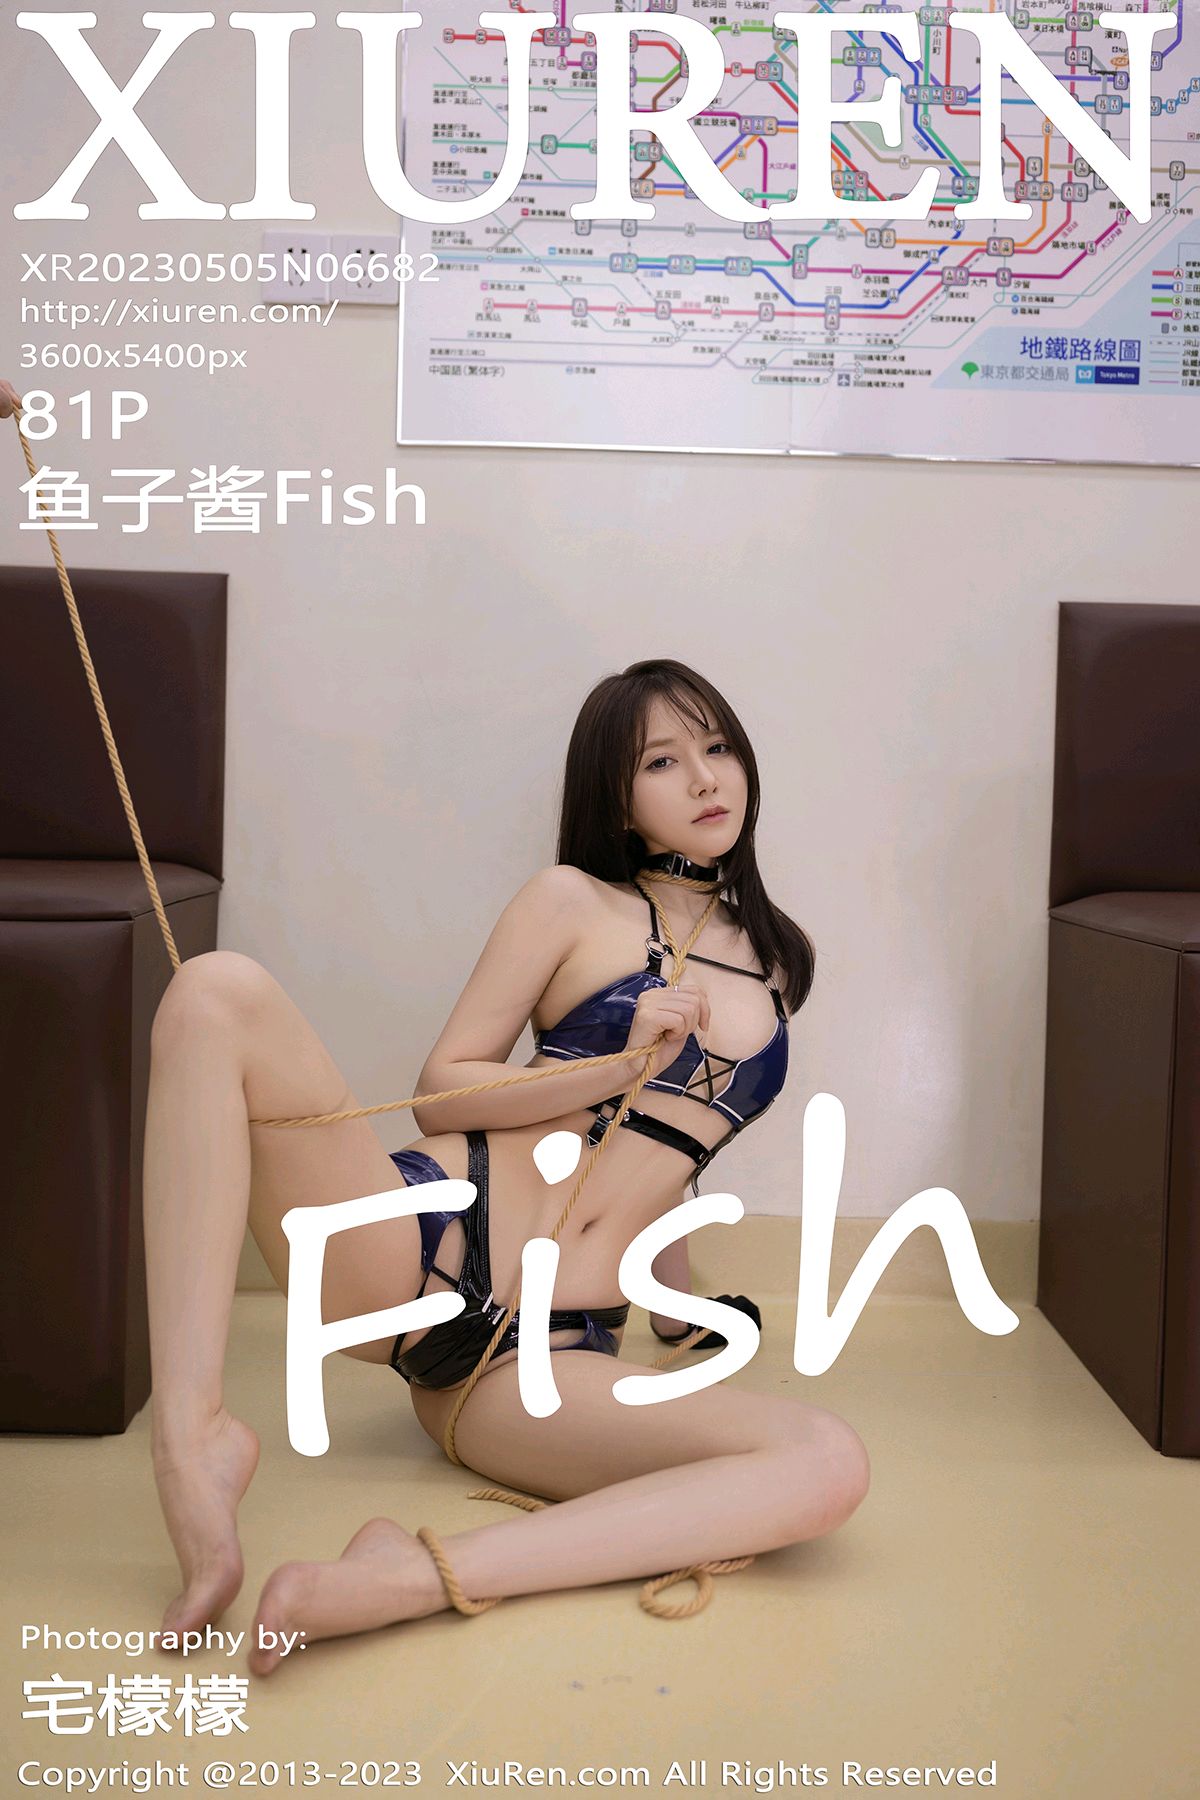 [XiuRen秀人网] 2023.05.05 No.6682 鱼子酱Fish [81+1P]